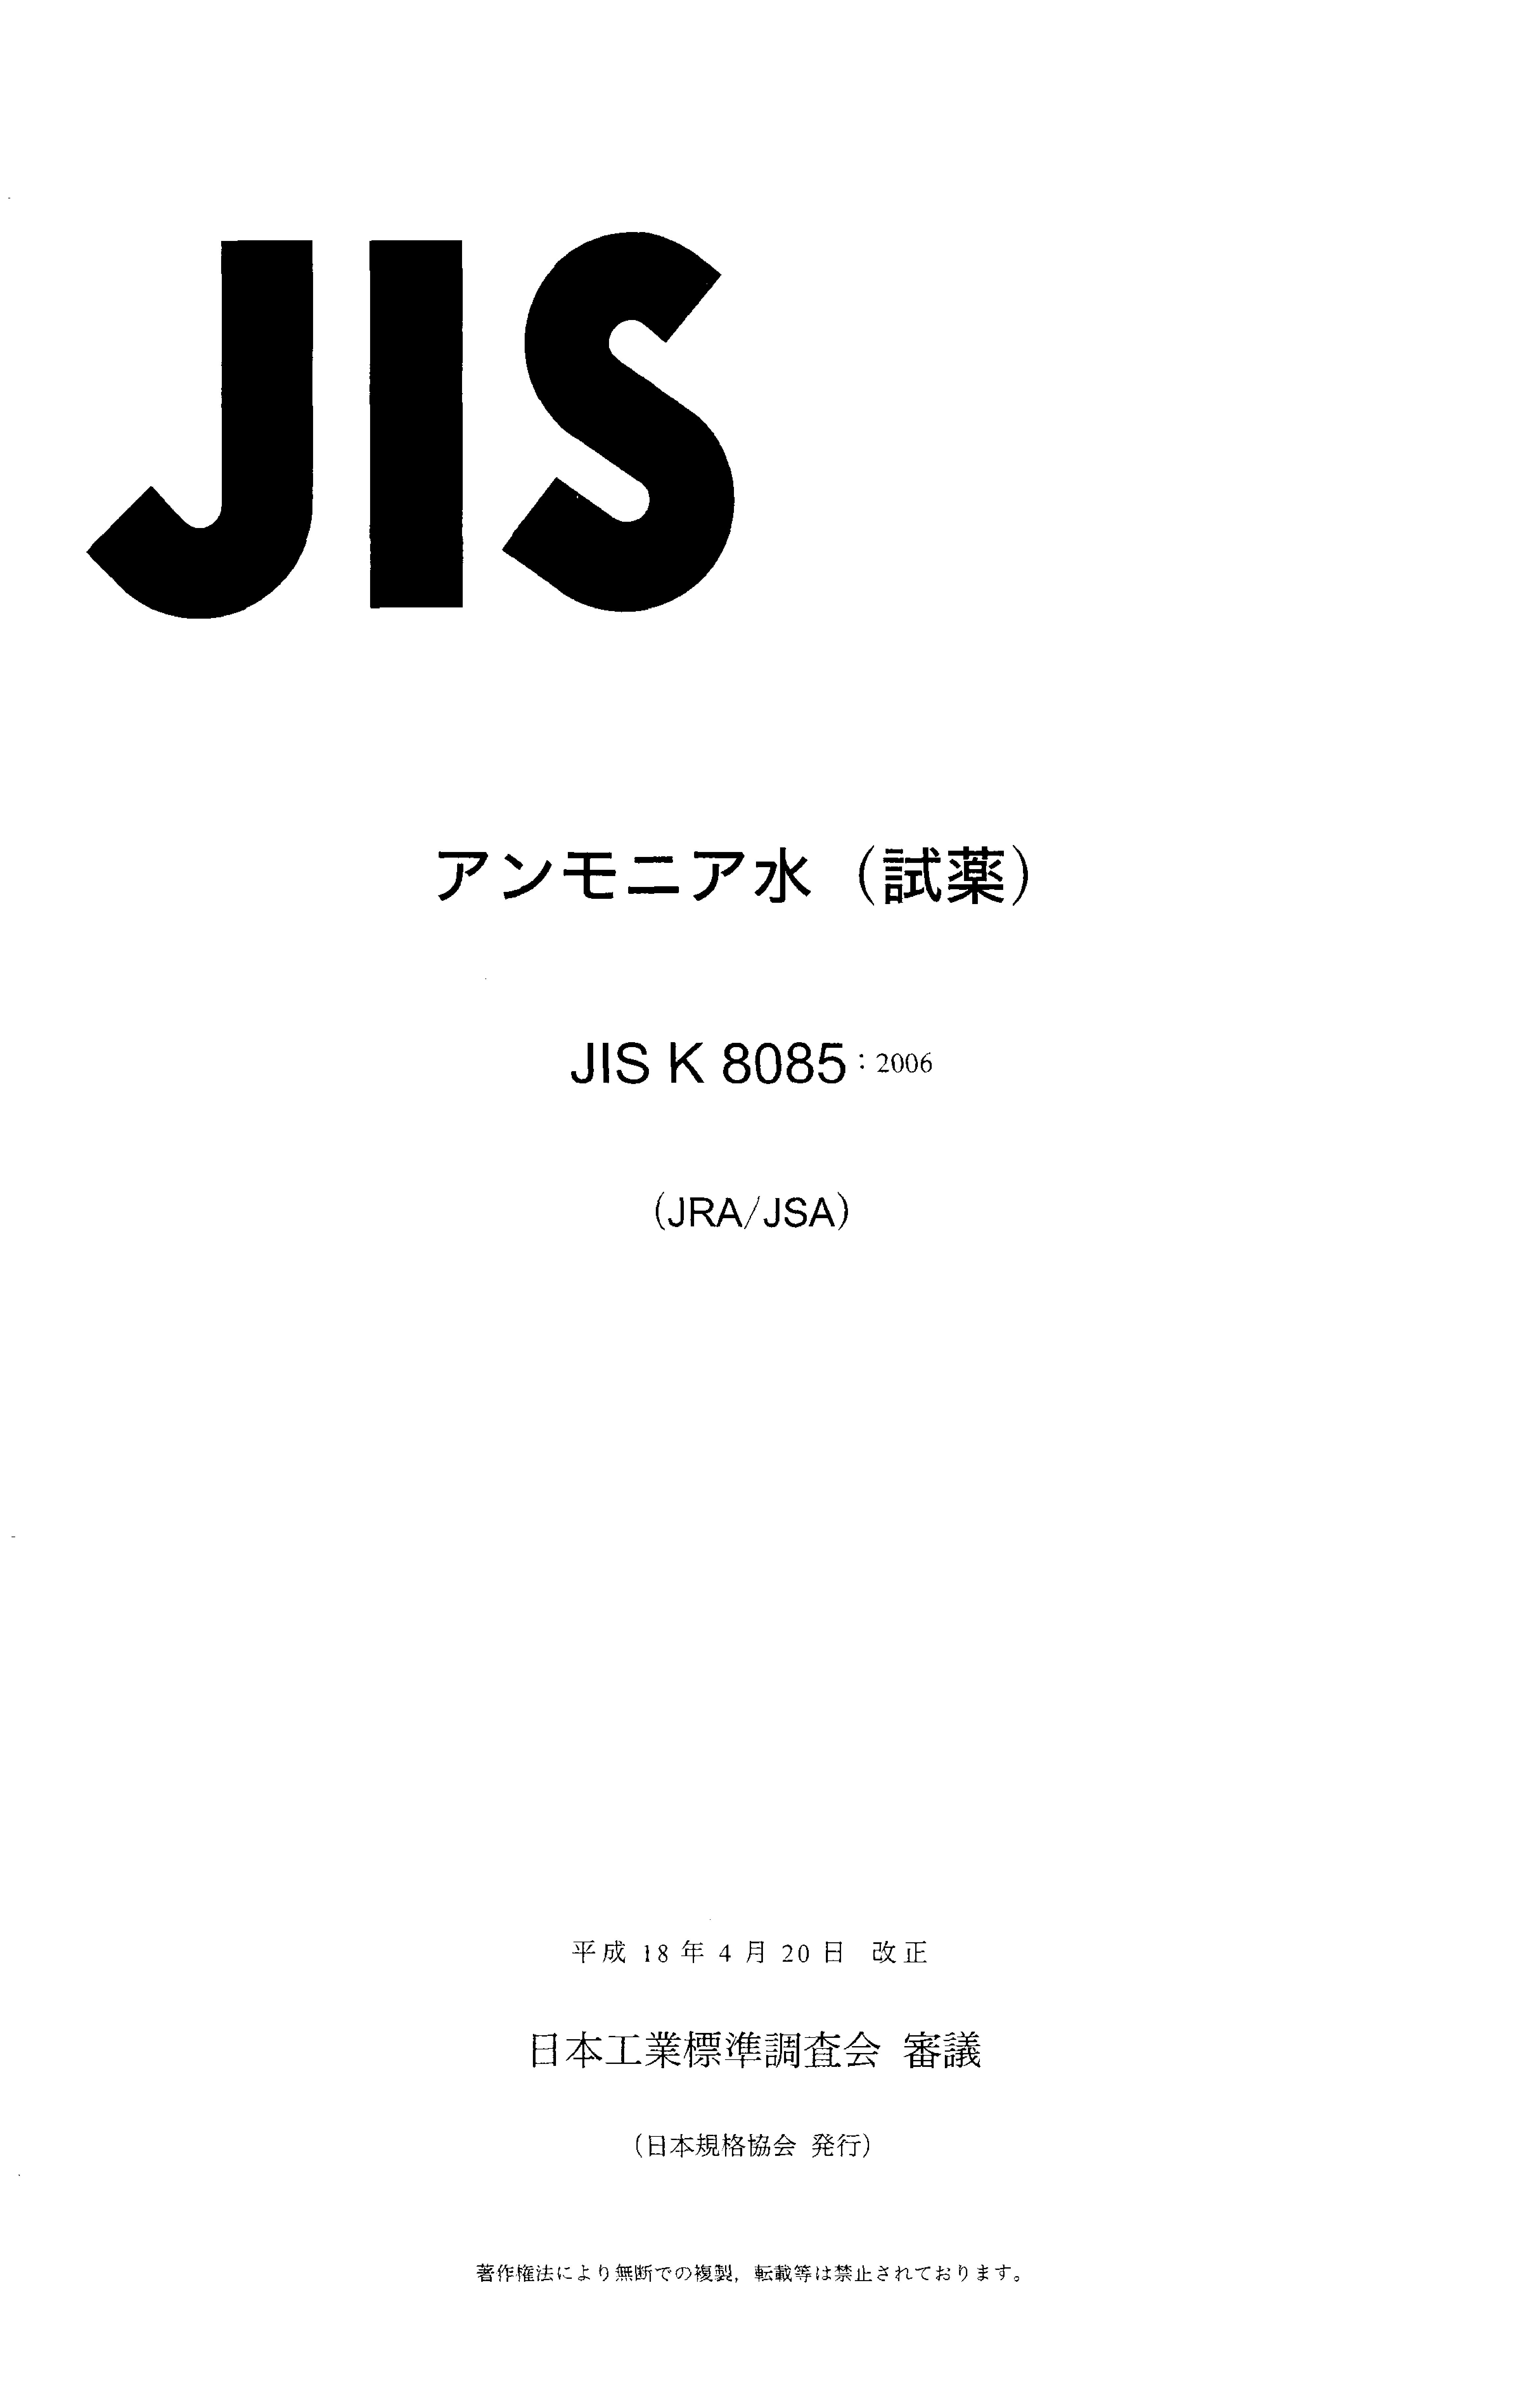 JIS K 8085:2006封面图